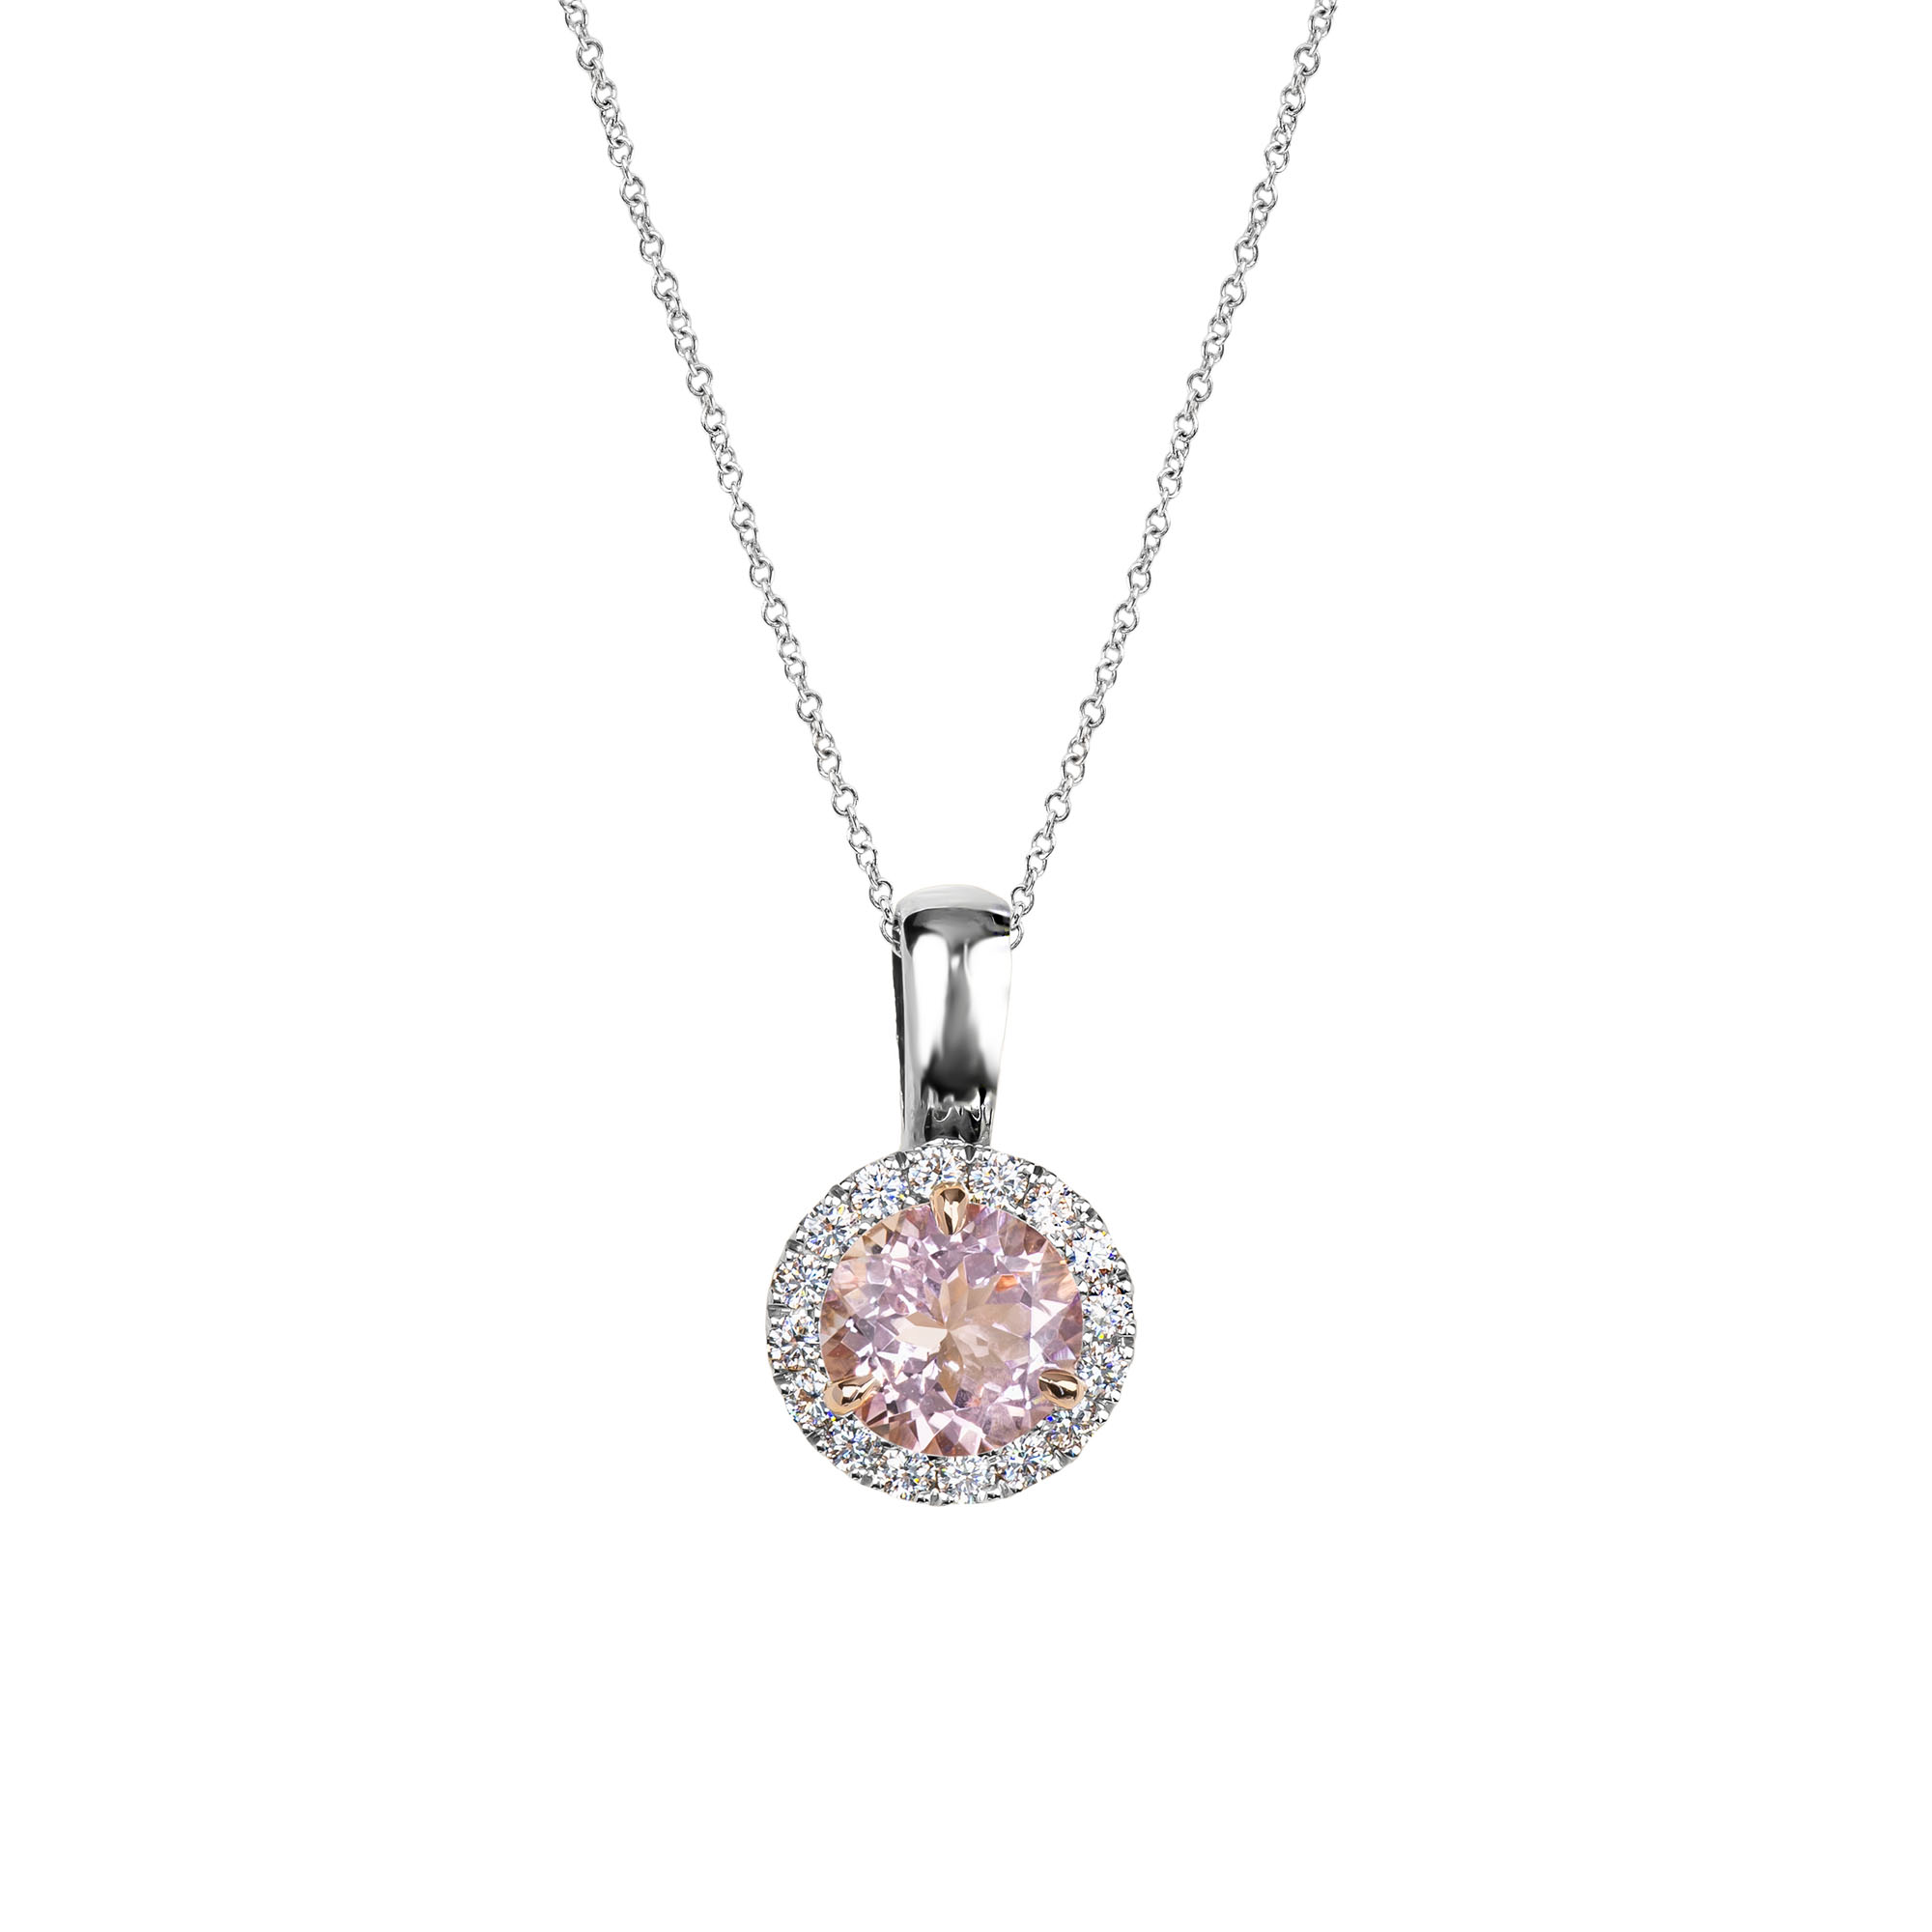 Morganite and diamond pendant - Holloway Diamonds